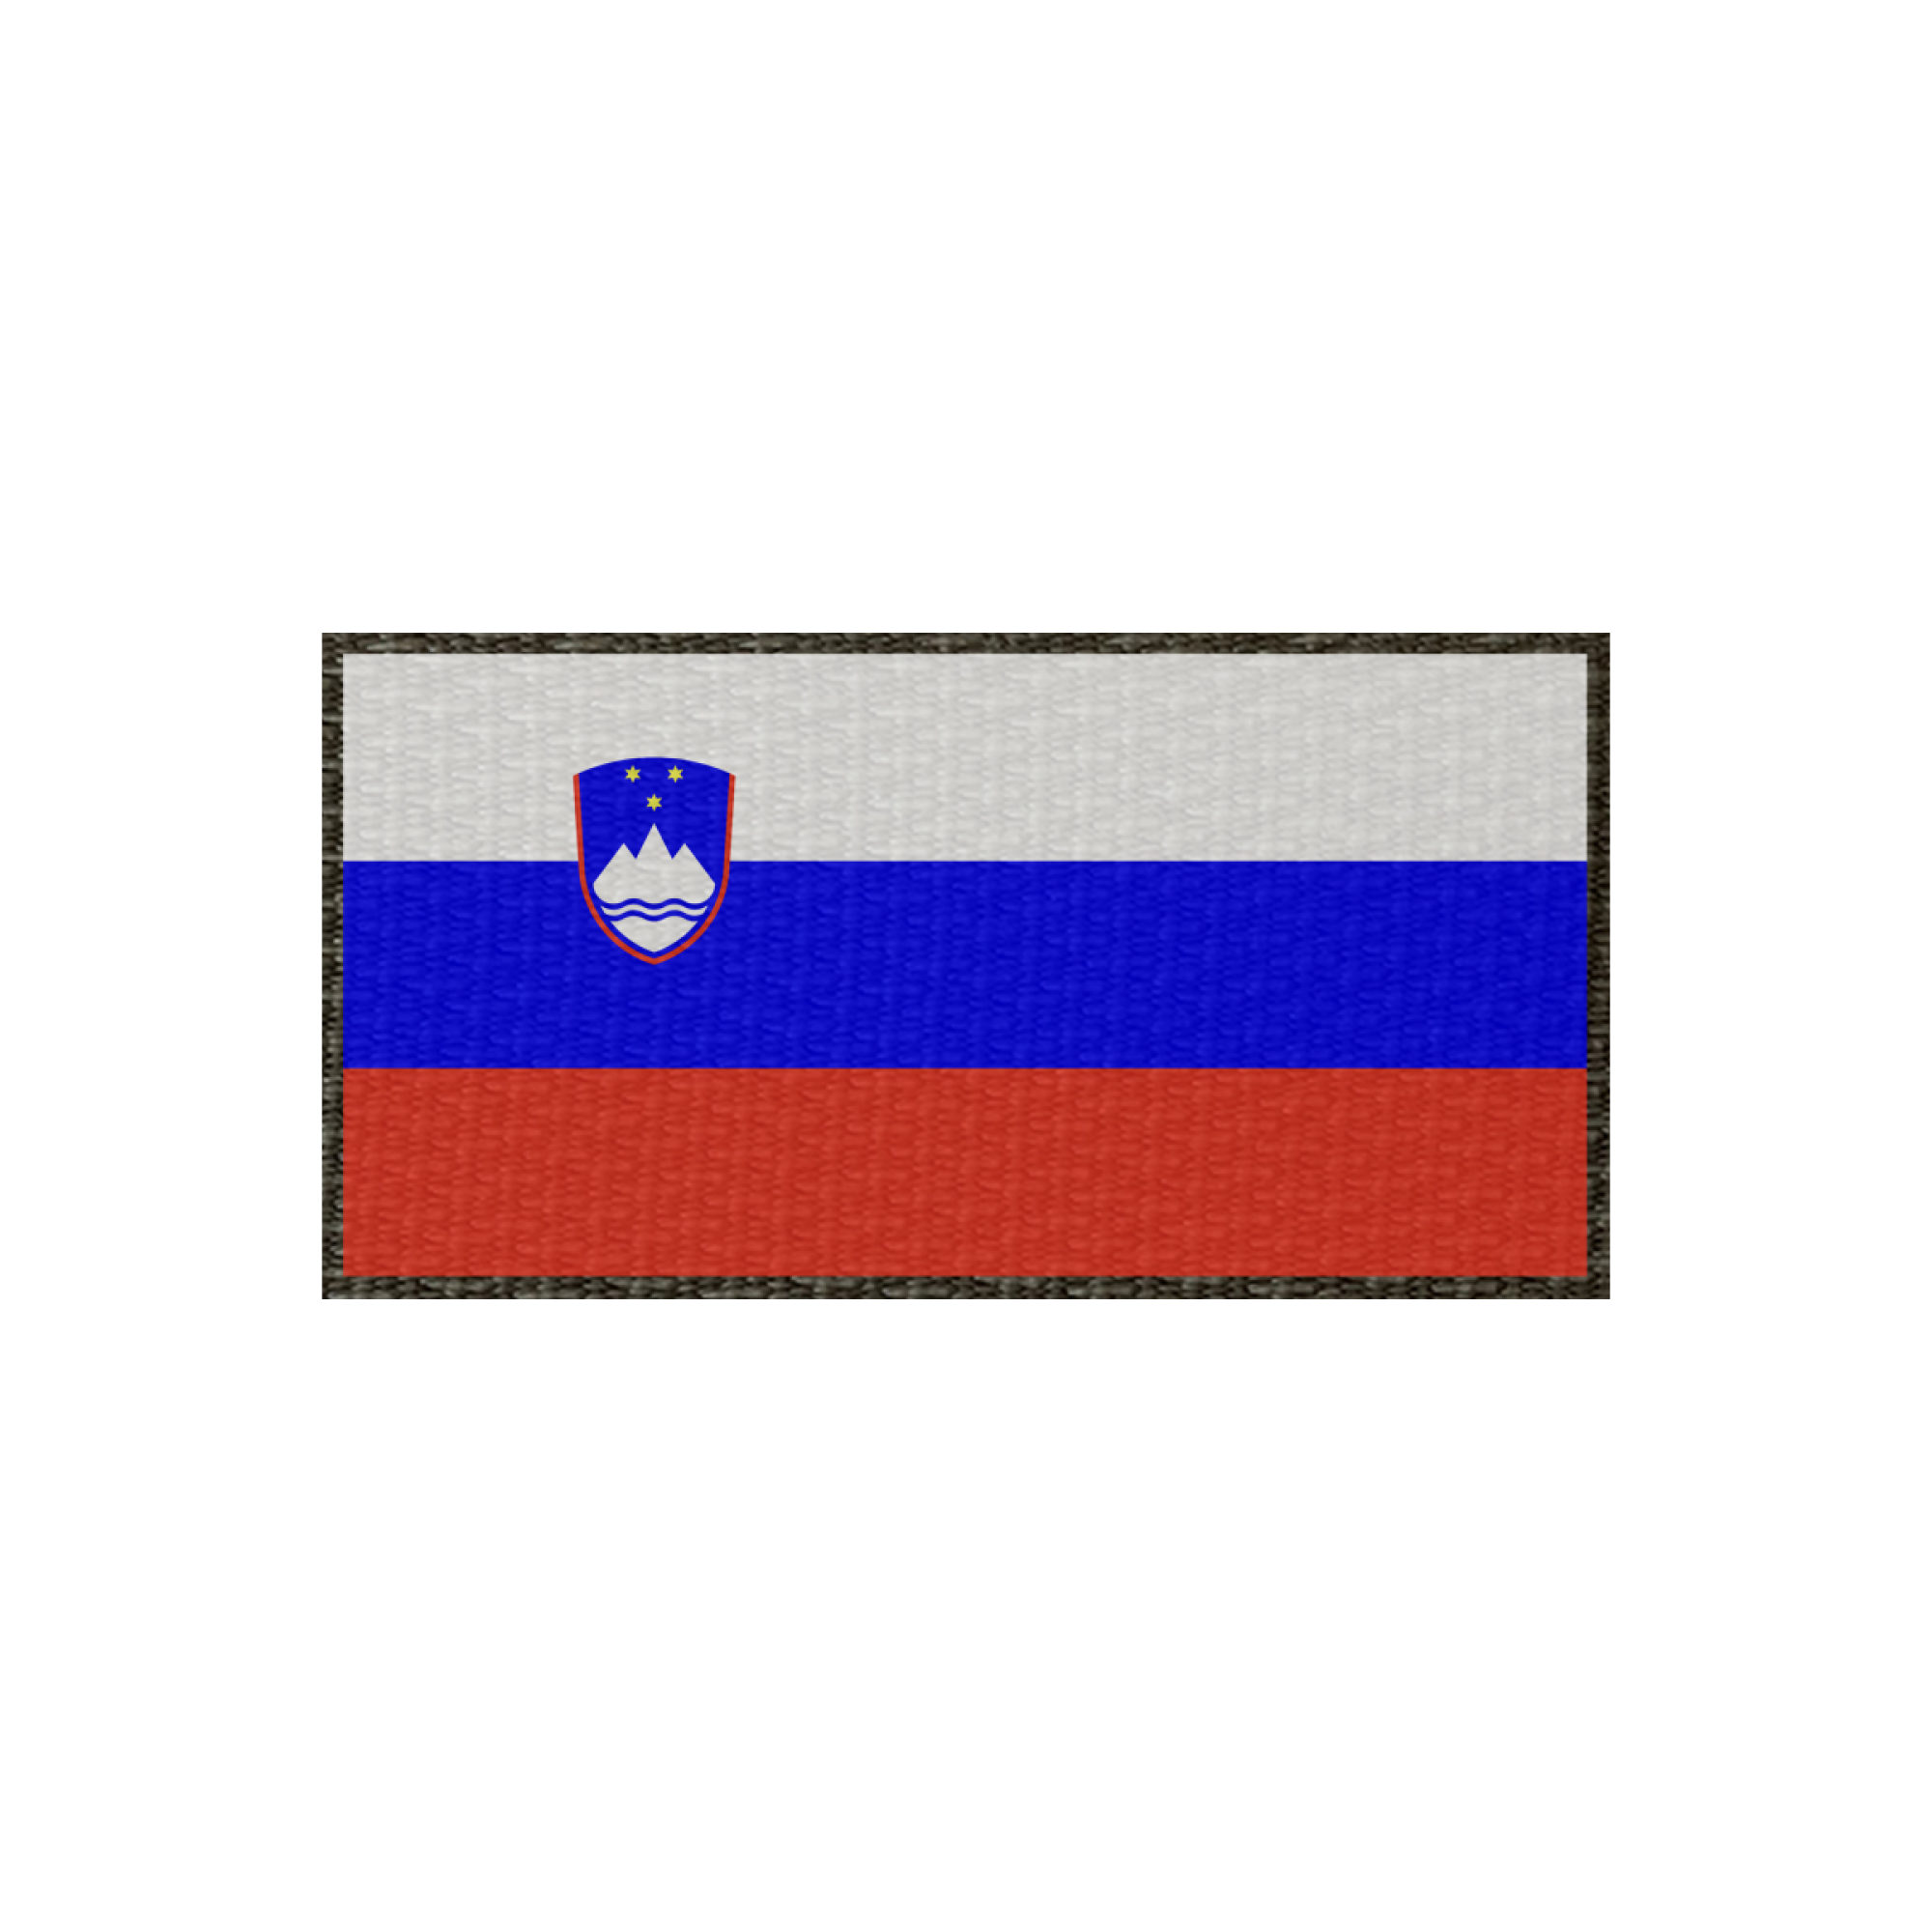 Patch Flagge Slowenien 60x30mm, Klett